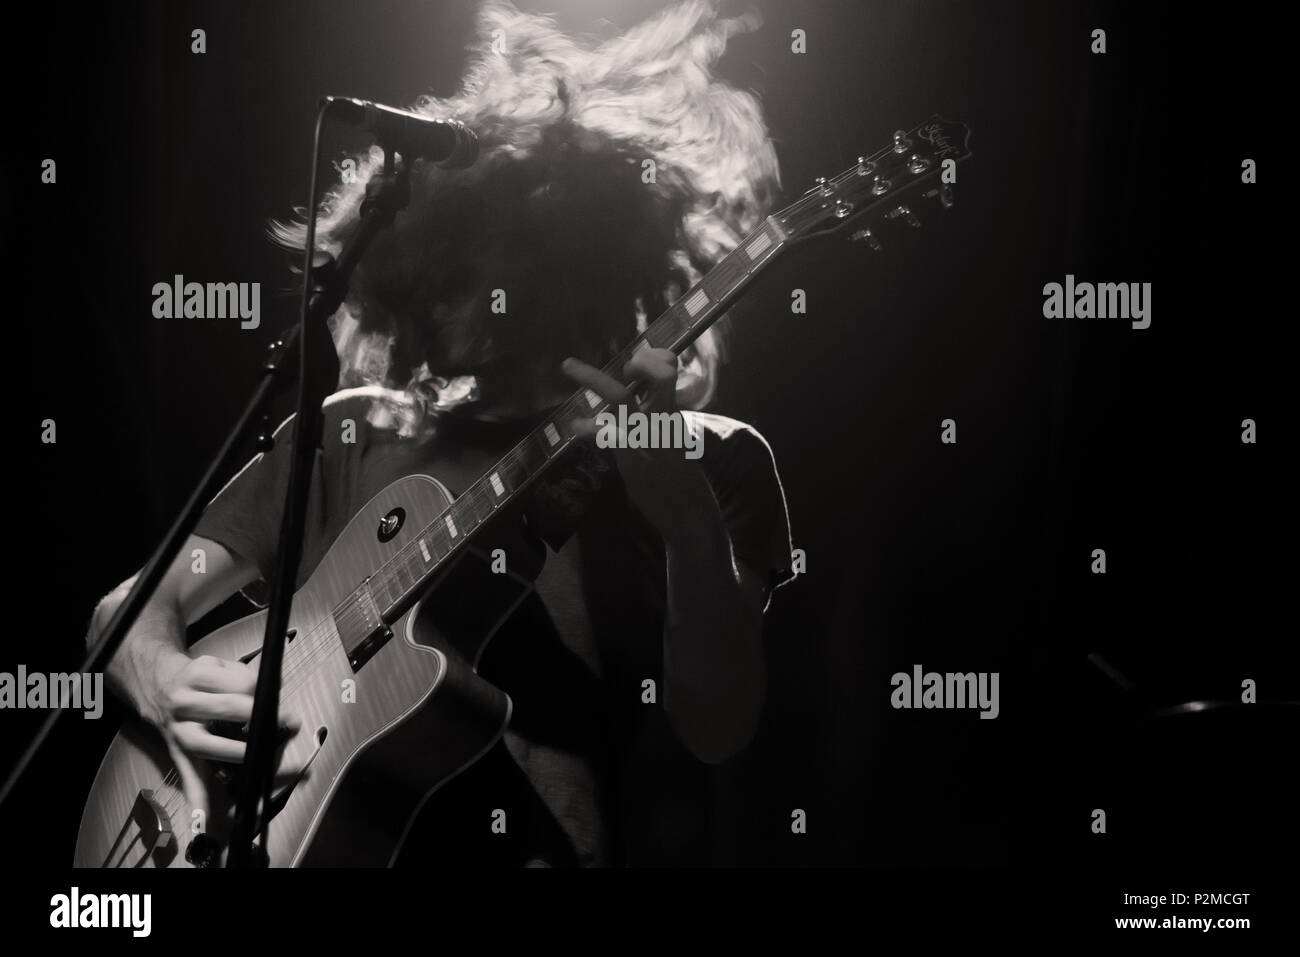 Assolo di chitarra immagini e fotografie stock ad alta risoluzione - Alamy